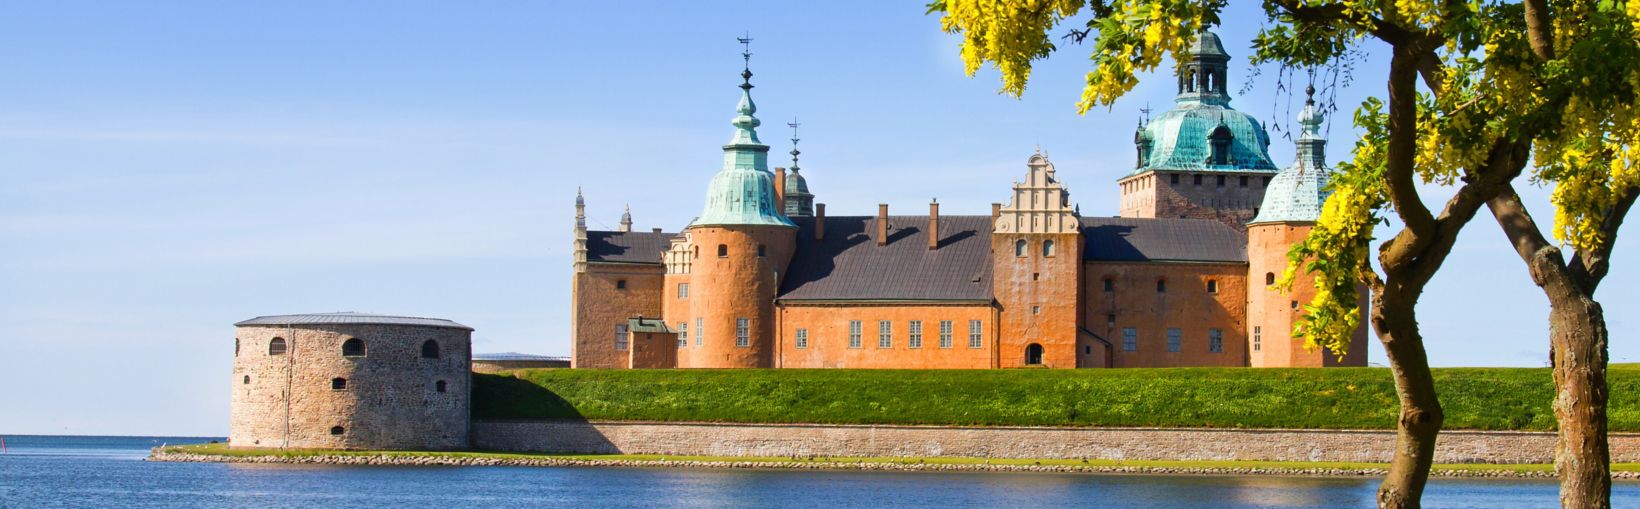 Średniowieczny zamek z czerwonym murem i niebieskimi wieżyczkami otoczony wodą, w słoneczny dzień w Kalmarze, Szwecja